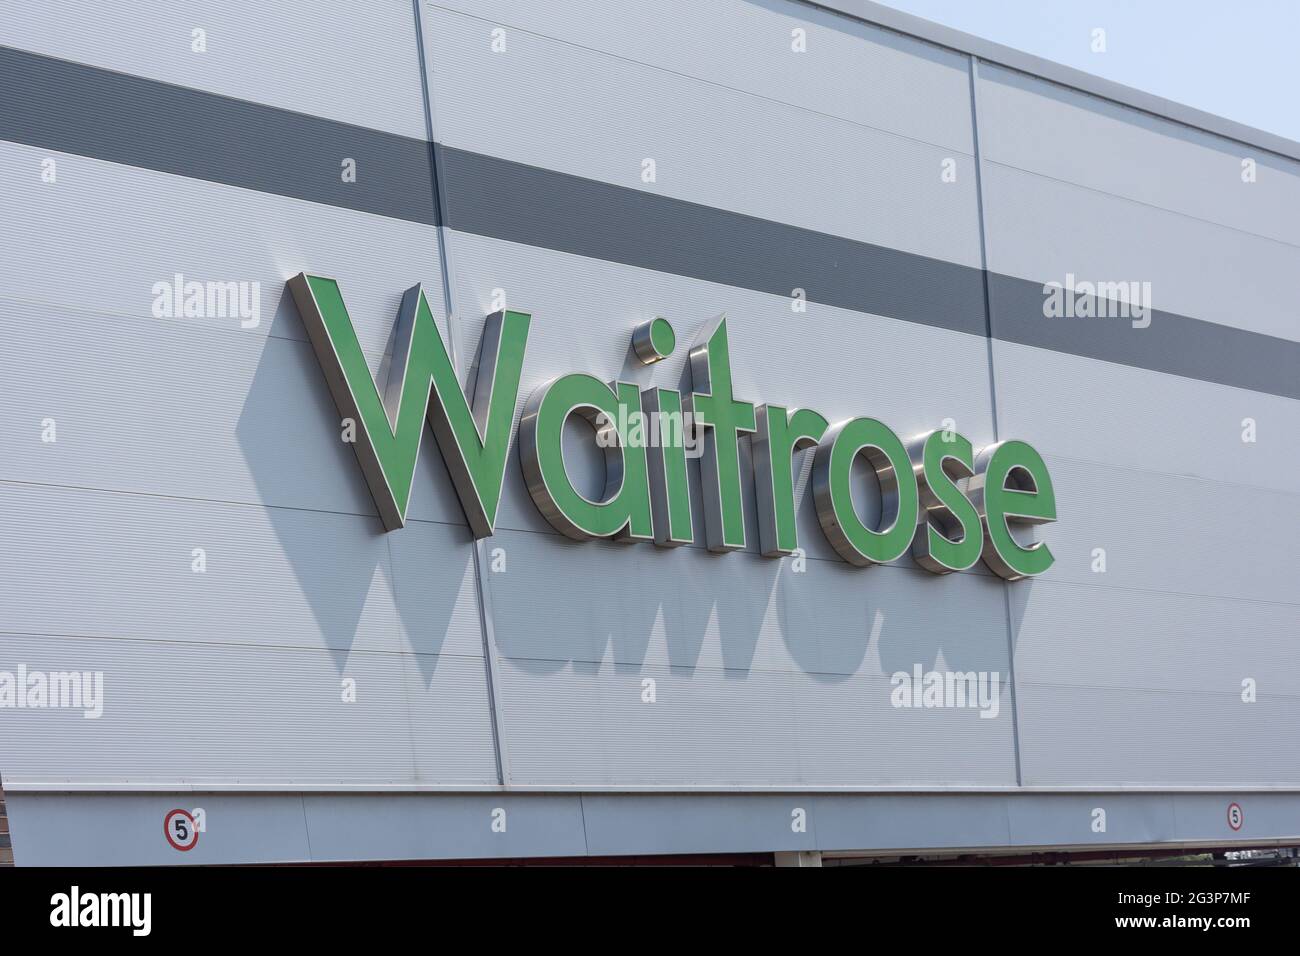 Waitrose Supermarket segno, Bridge Street, Uttoxeter, Staffordshire, Inghilterra, Regno Unito Foto Stock